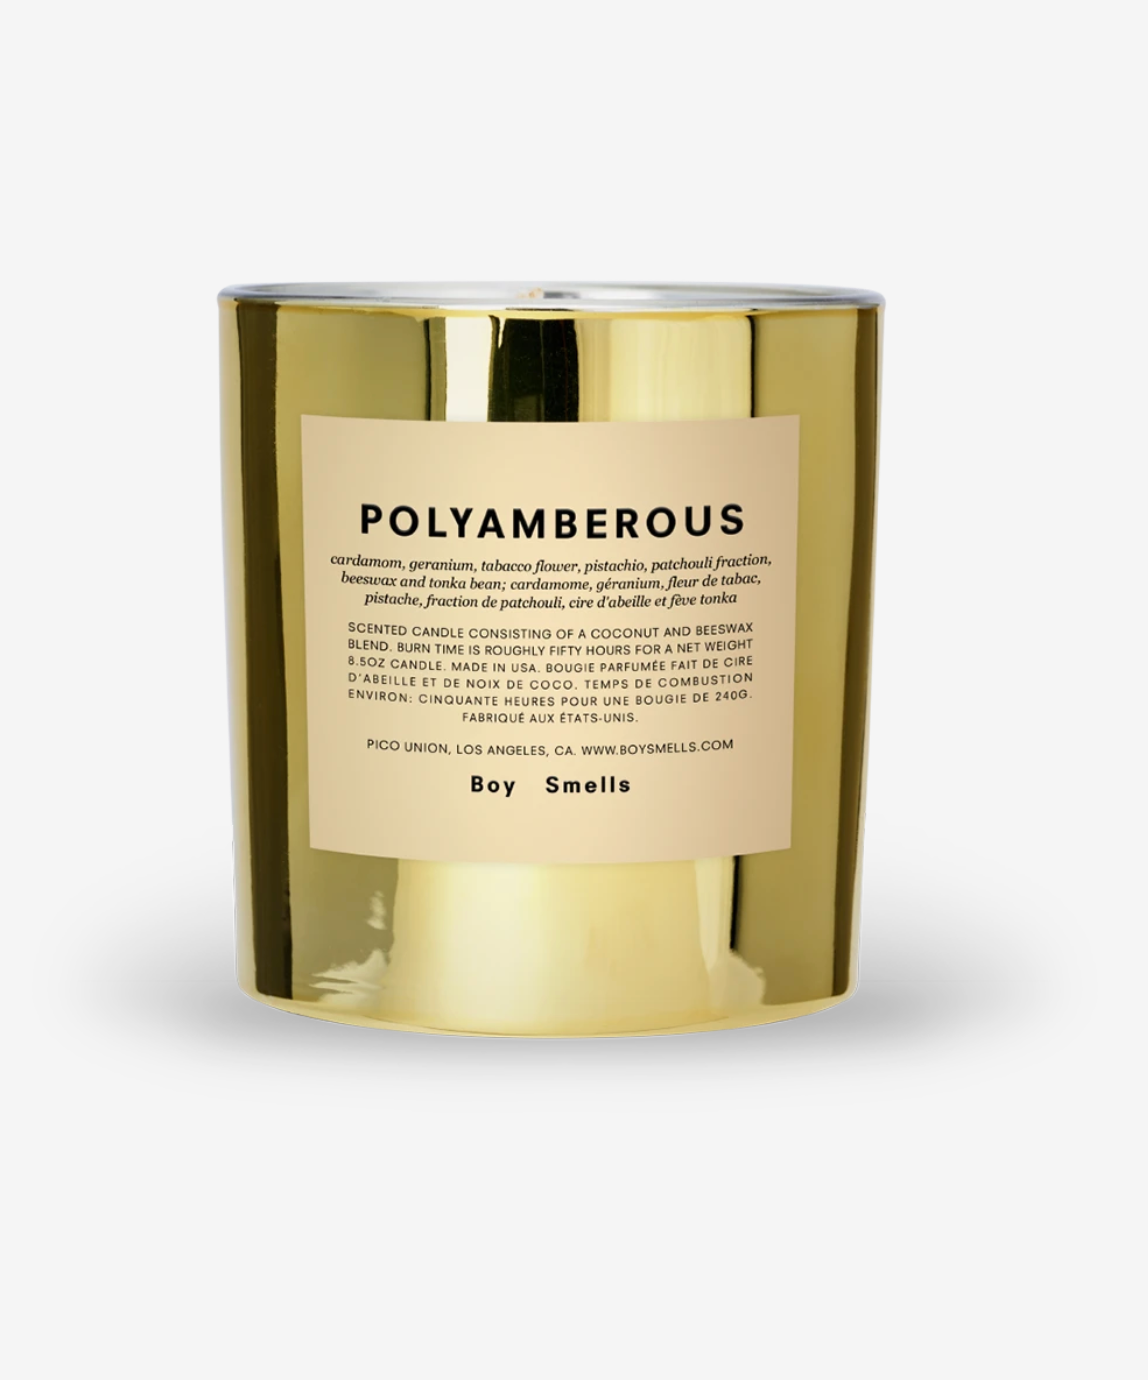 Polyamberous Candle